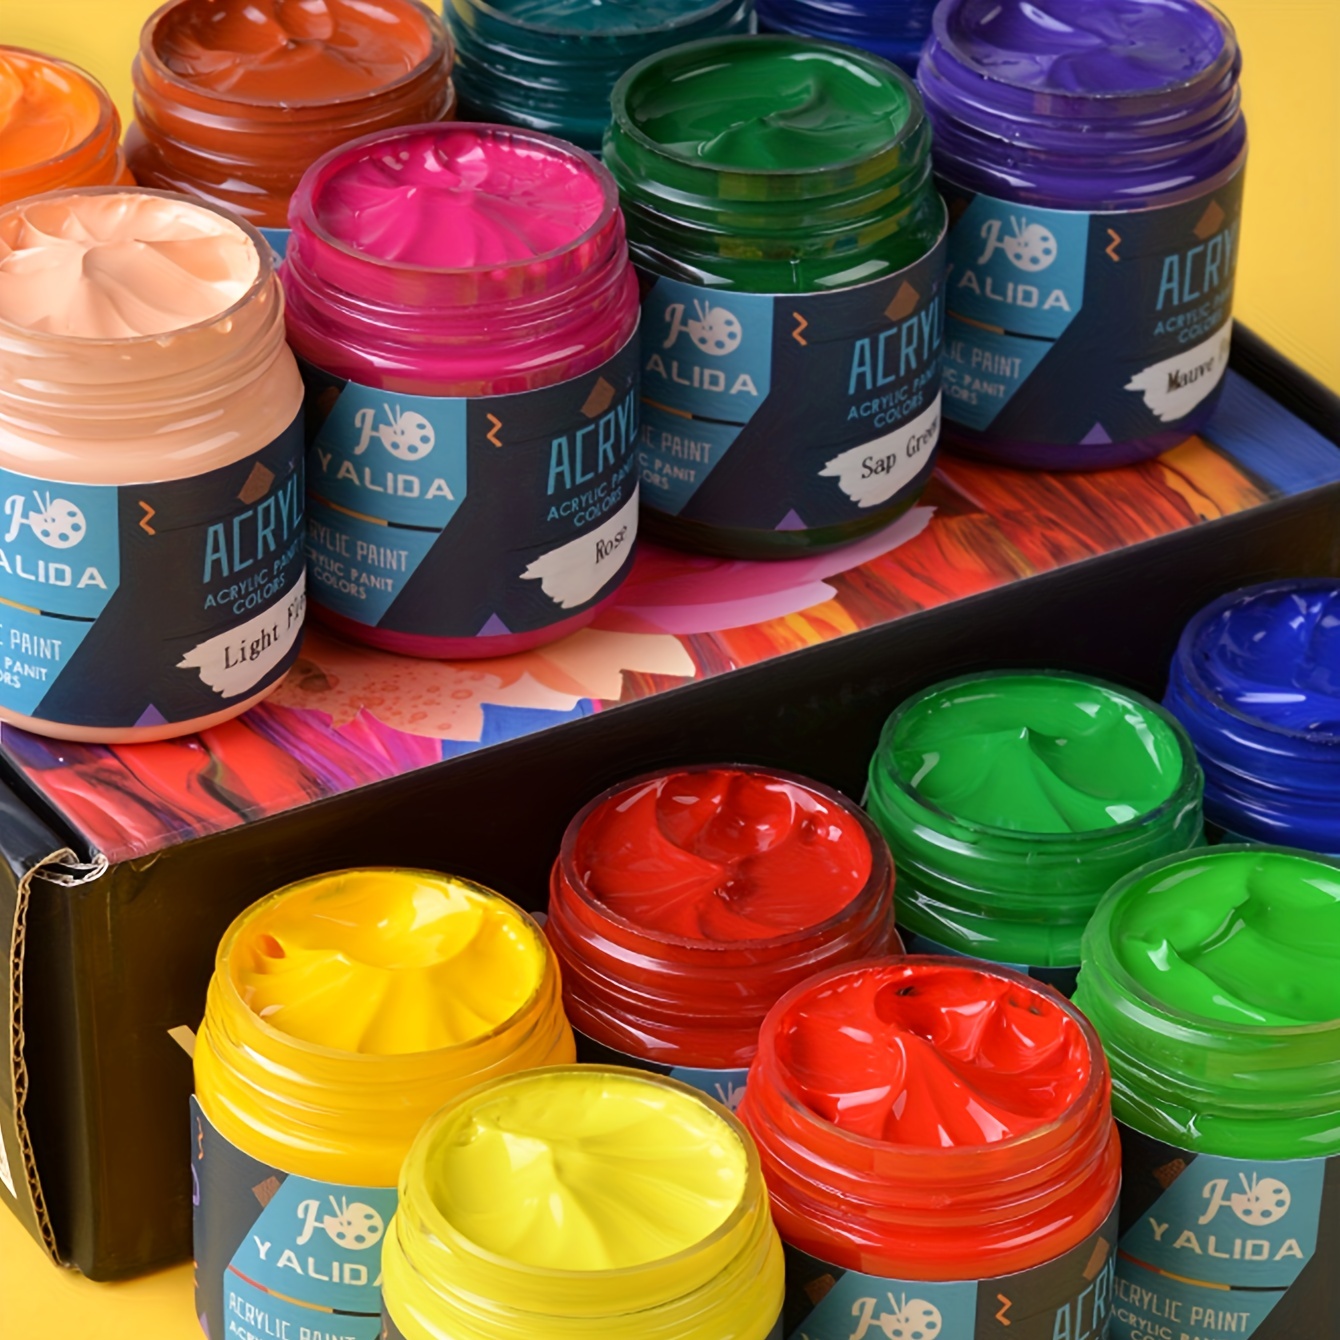 STATIONERY ISLAND Colori Acrilici Set, 24 Colori Acrilici per Dipingere  12ml, Colori Acrilici Per Dipingere Su Tela, Pittura Rocciosa, Per Bambini  e